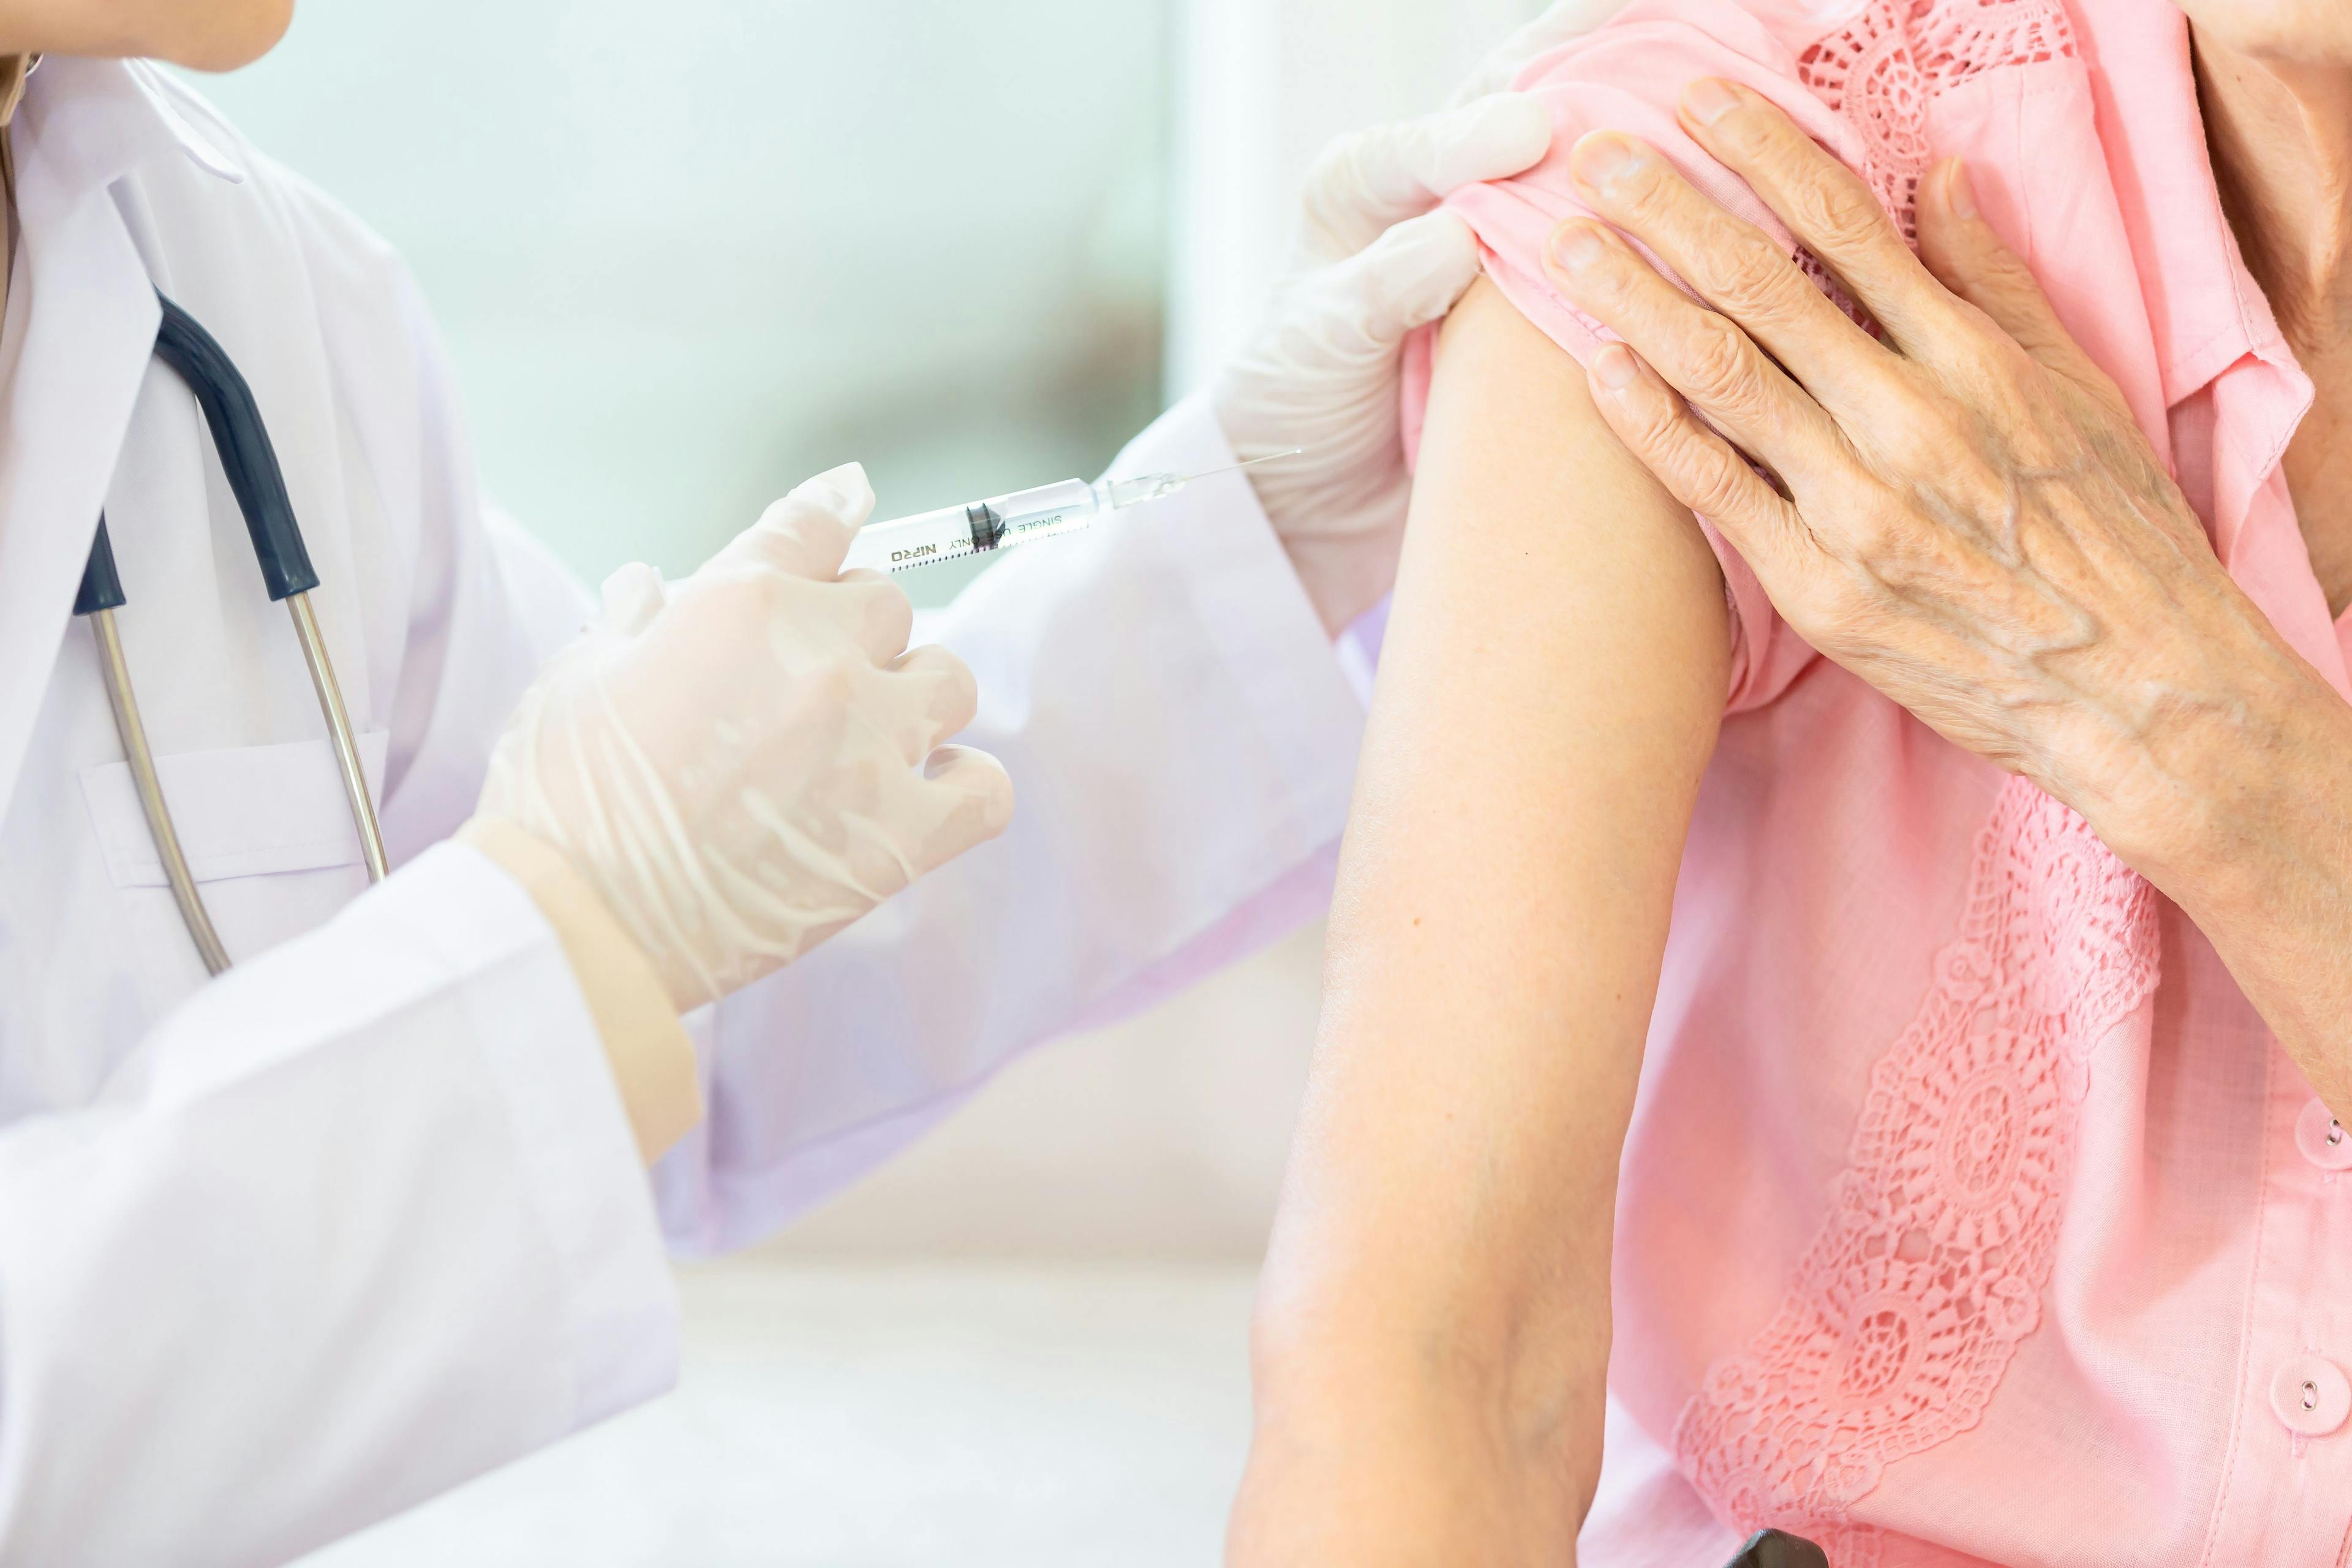 Vaccinating the Autoimmune Patient